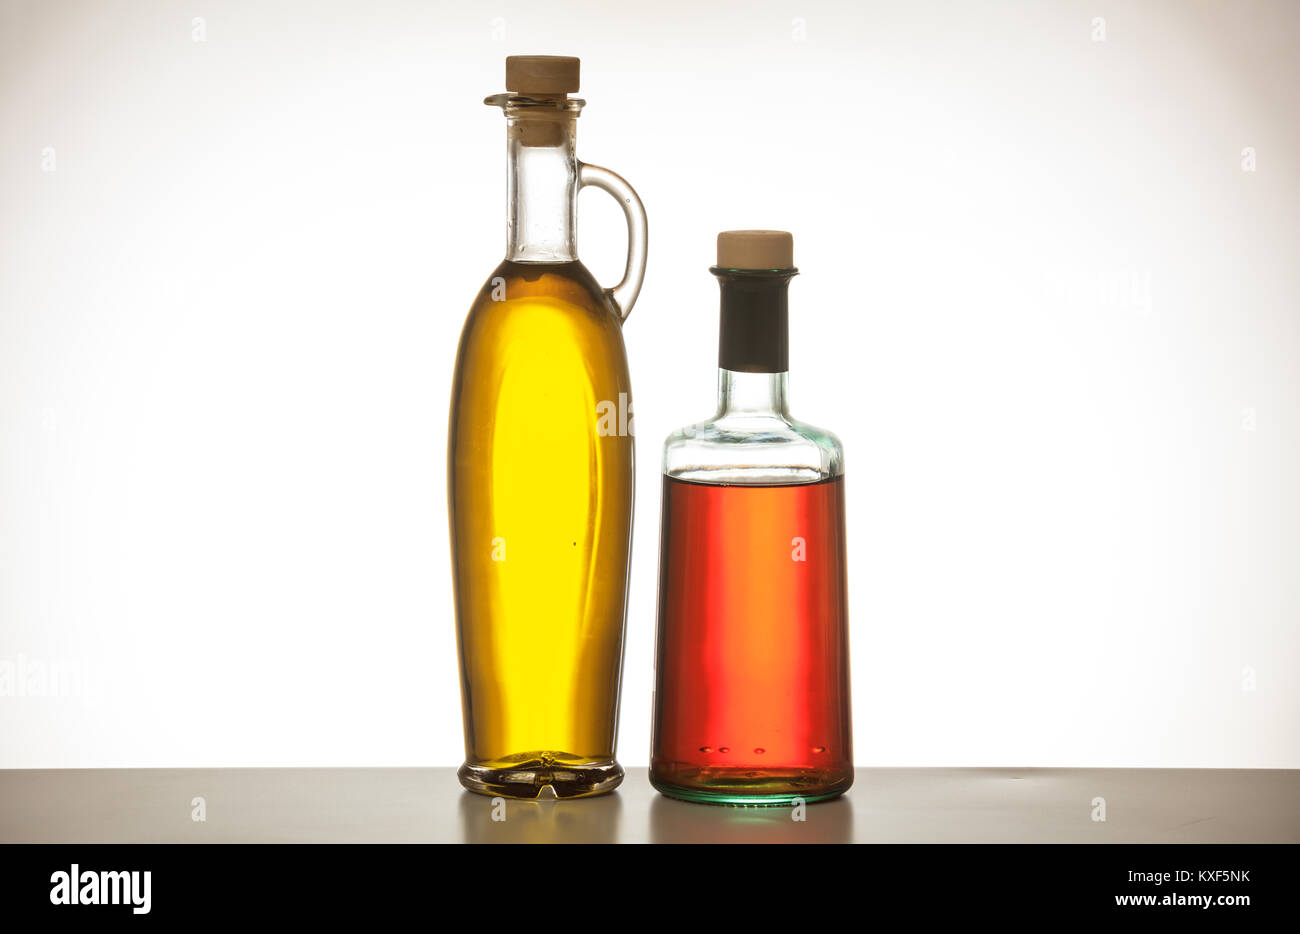 Olive oil and vinegar bottles on gradien background Stock Photo